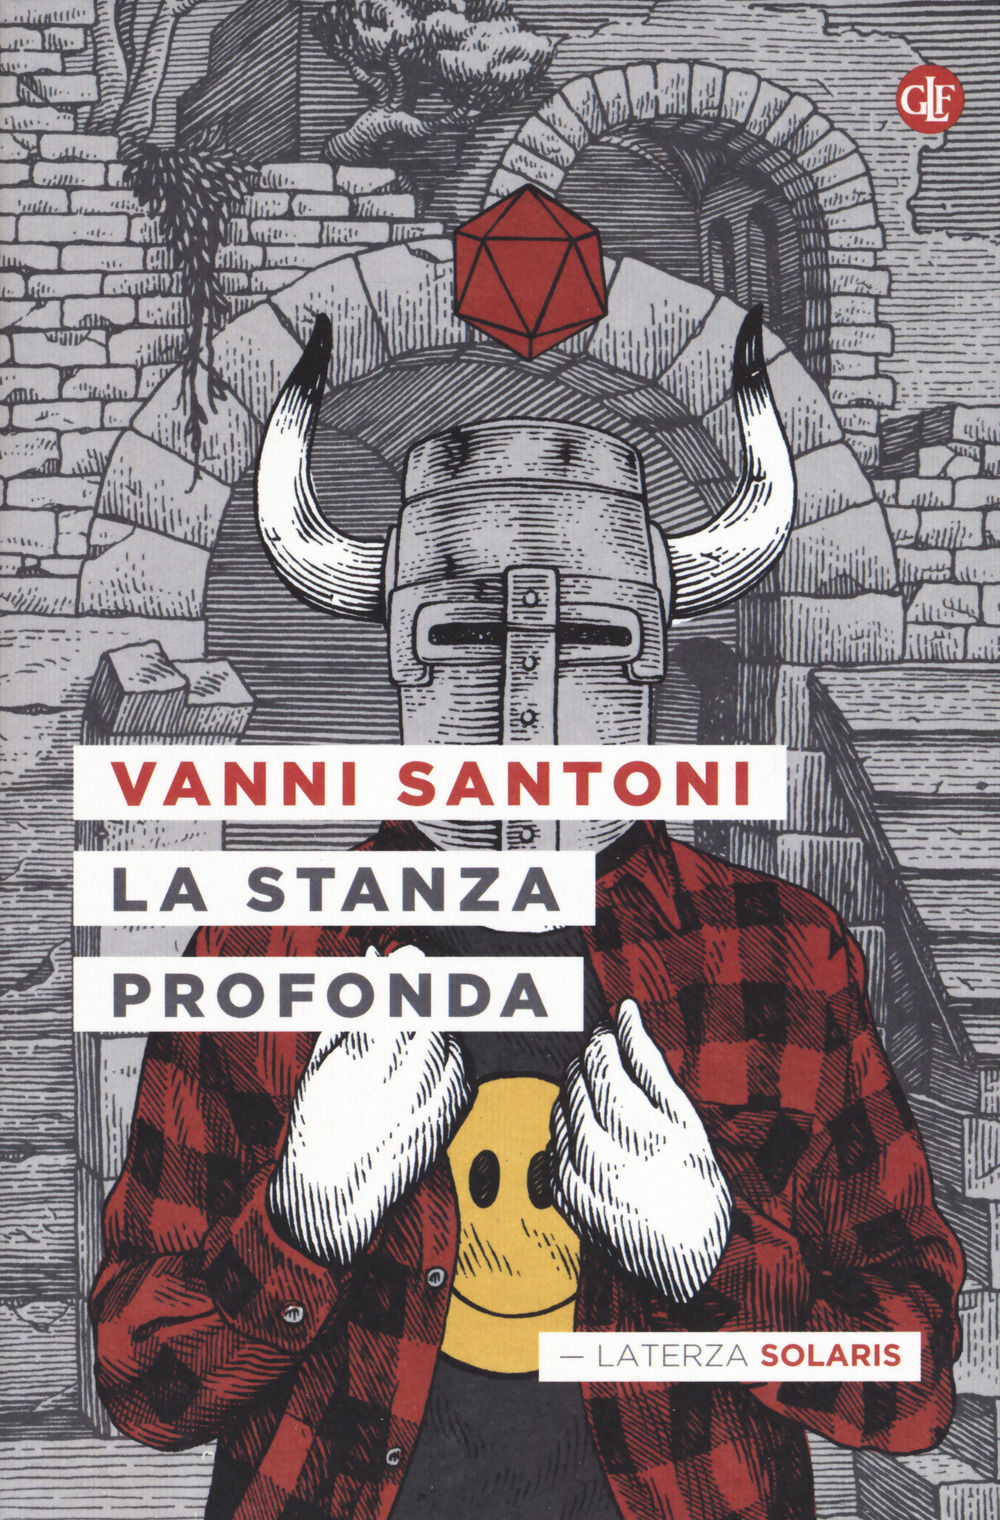 Vanni Santoni, La stanza profonda (Laterza 2017)